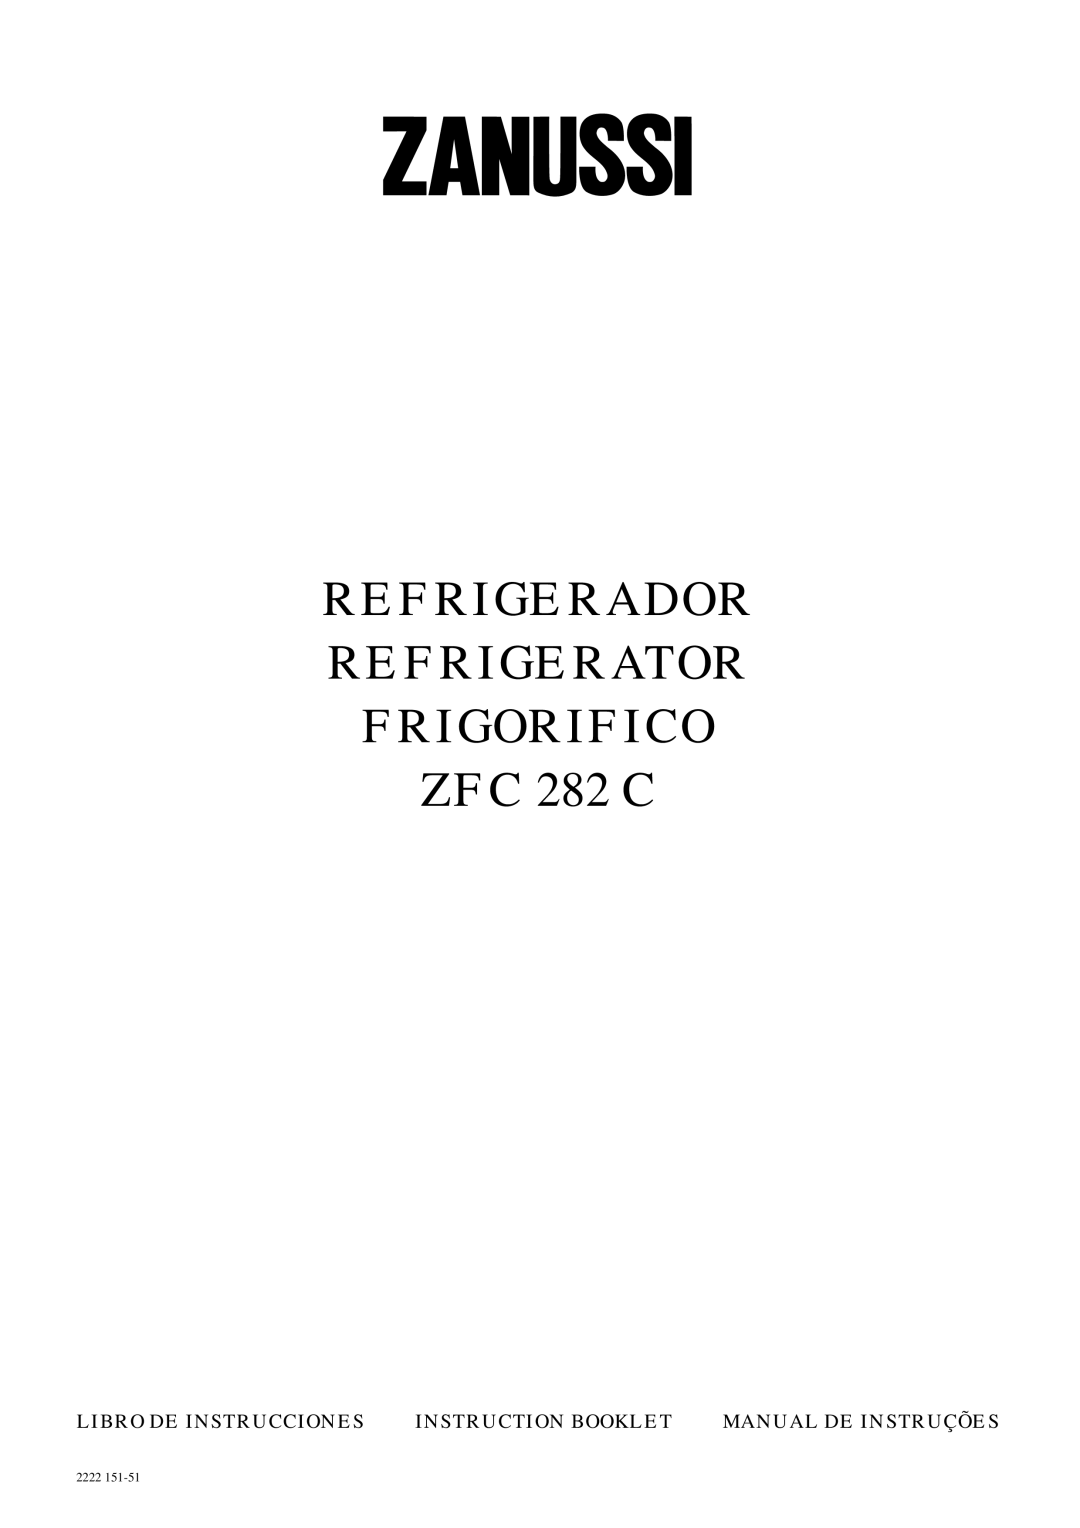 Zanussi manual REFRIGERADOR REFRIGERATOR FRIGORIFICO ZFC 282 C, Libro De Instrucciones, Instruction Booklet, 2222 